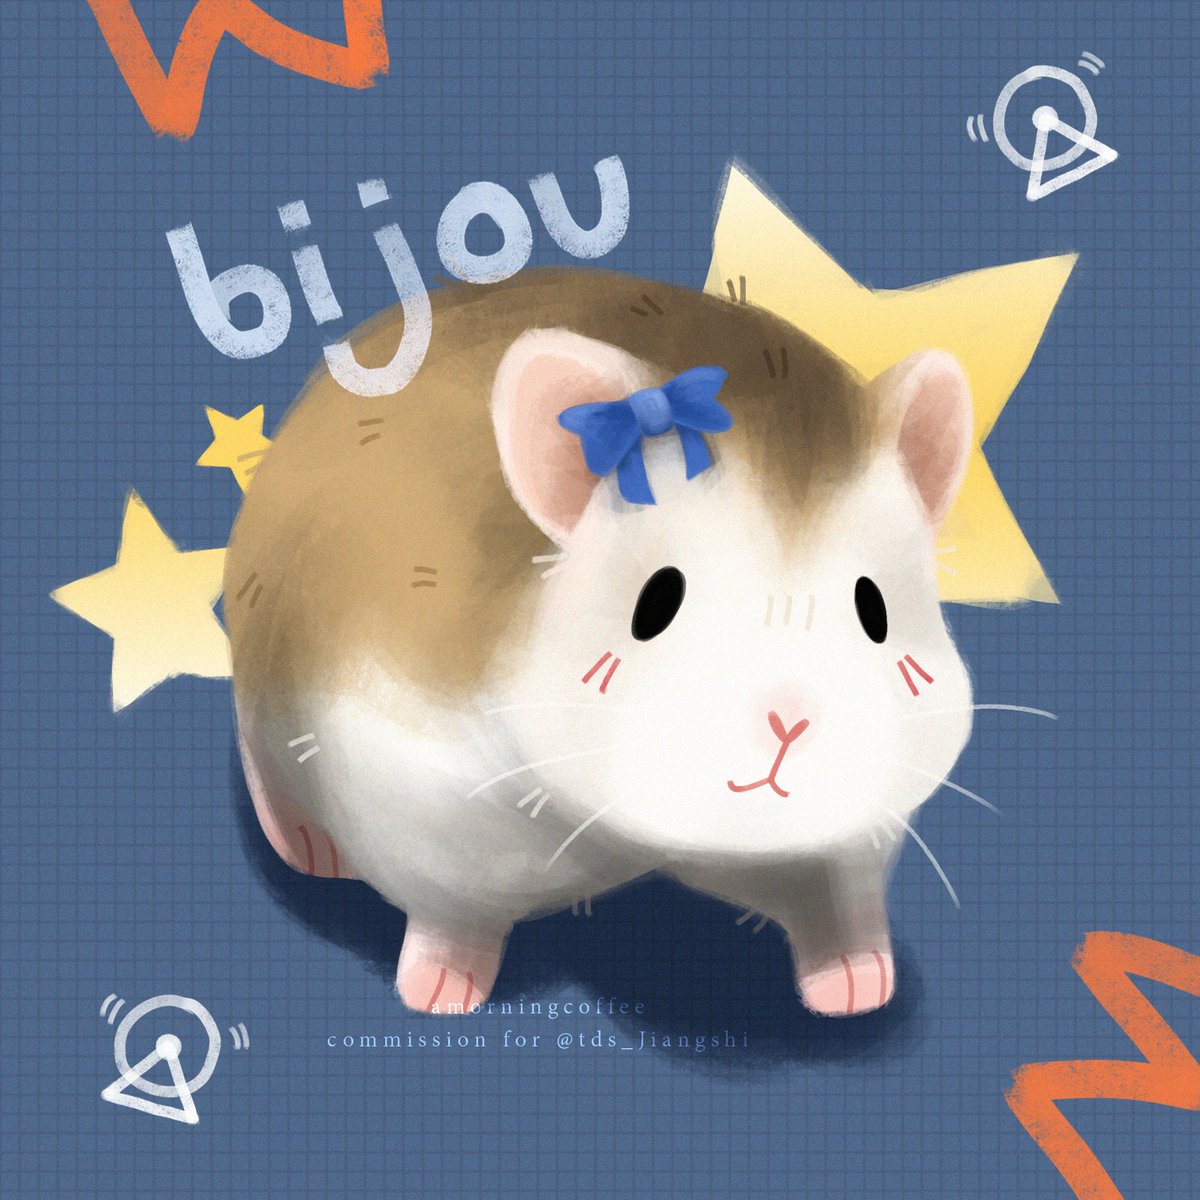 Bijou baby~ 🥺💝
for @tds_Jiangshi

#hamsterportrait #hamster #hamsterart #digitalpetportrait #petportraitcommission #petportraitartist